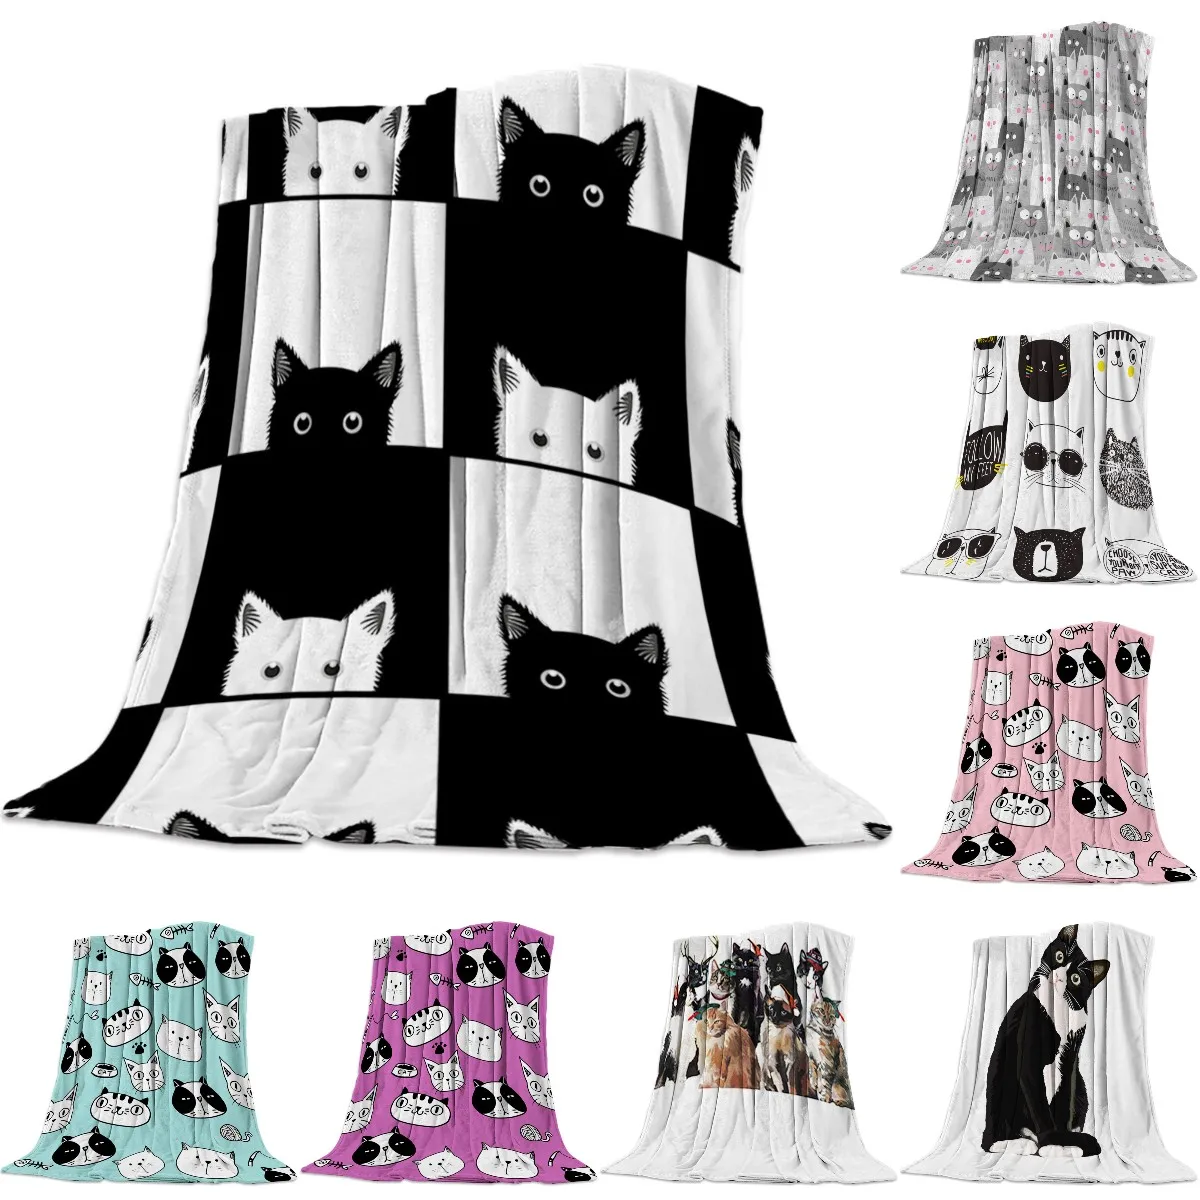 

Геометрическое черно-белое одеяло в виде кота унисекс Детское покрывало на диван покрывало прочное теплое удобное покрывало